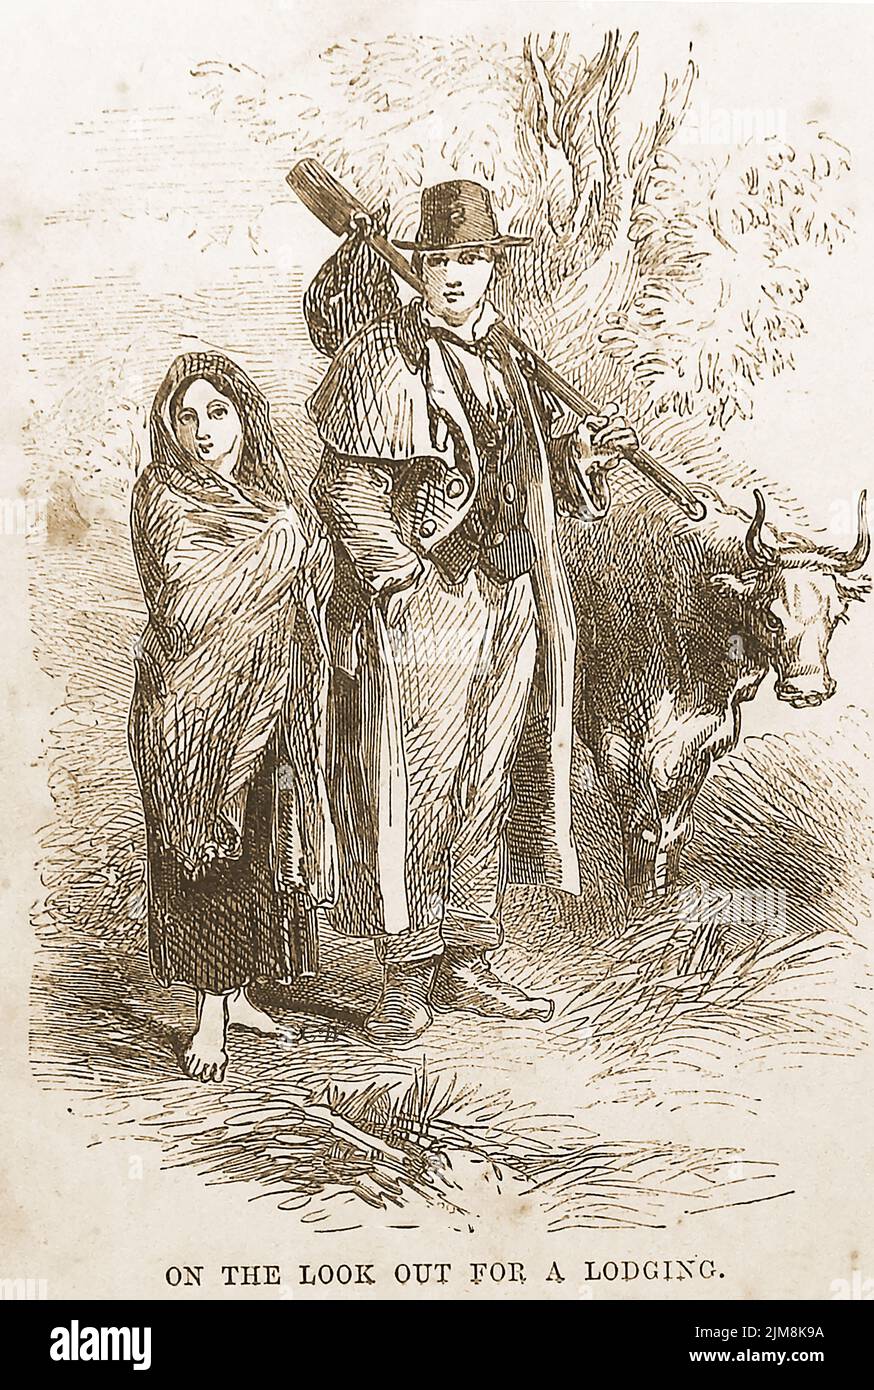 Eine viktorianische Illustration eines jungen, obdachlosen Ehepaares, das während der Landfreigaben in den schottischen Highlands und Inseln zwischen 1750 und 1860 Arbeit und Unterkunft suchte. Es ist unklar, ob die Kuh zu ihrem früheren Zuhause gehörte. Stockfoto